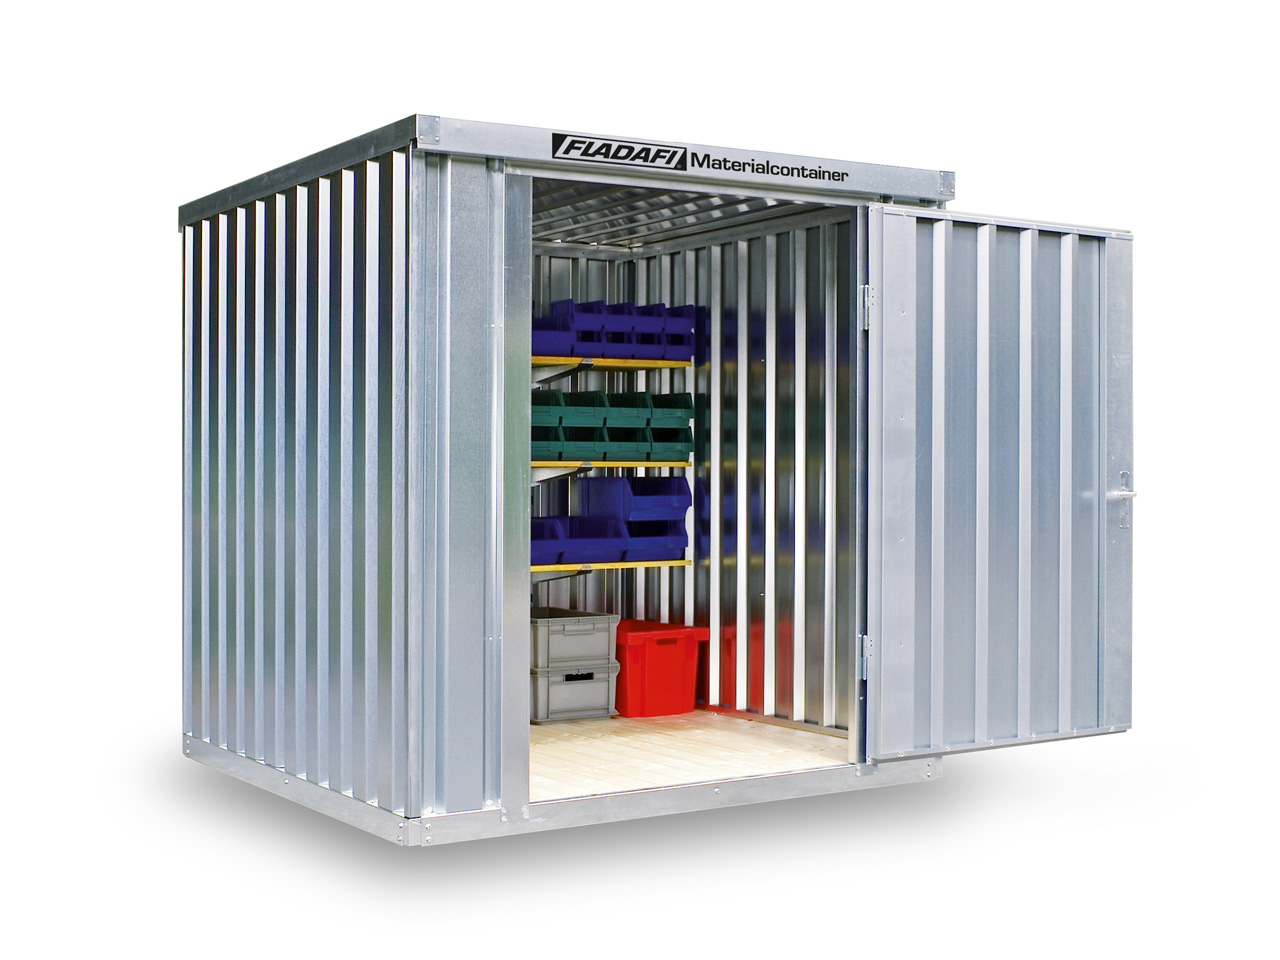 FLADAFI Materialcontainer MC 1200 ✔️ günstig bei HWG-Tec kaufen ✔️ mit Holzboden ✔️